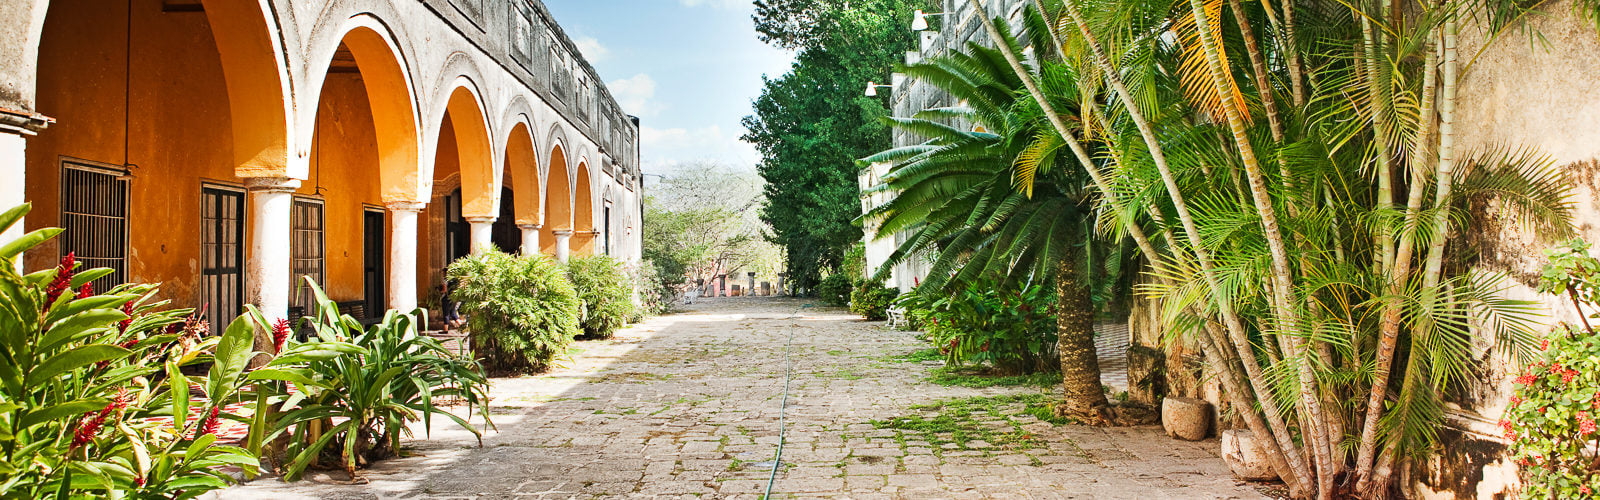 Hacienda Yaxcopoil. Yucatan, Mexico